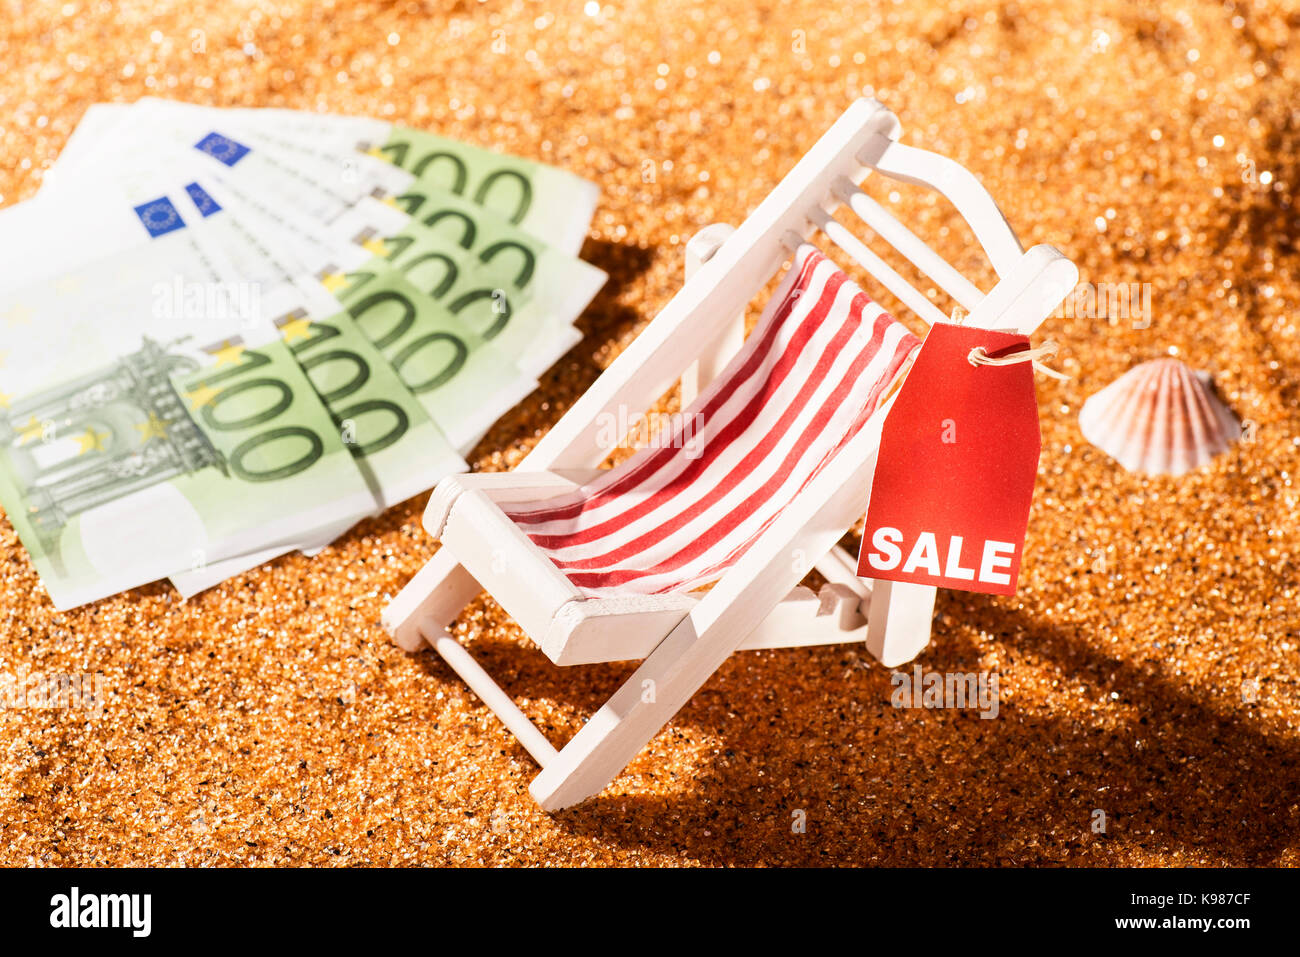 Liegestuhl am Strand, Rabatt Label mit dem Wort Verkauf und Banknoten Stockfoto